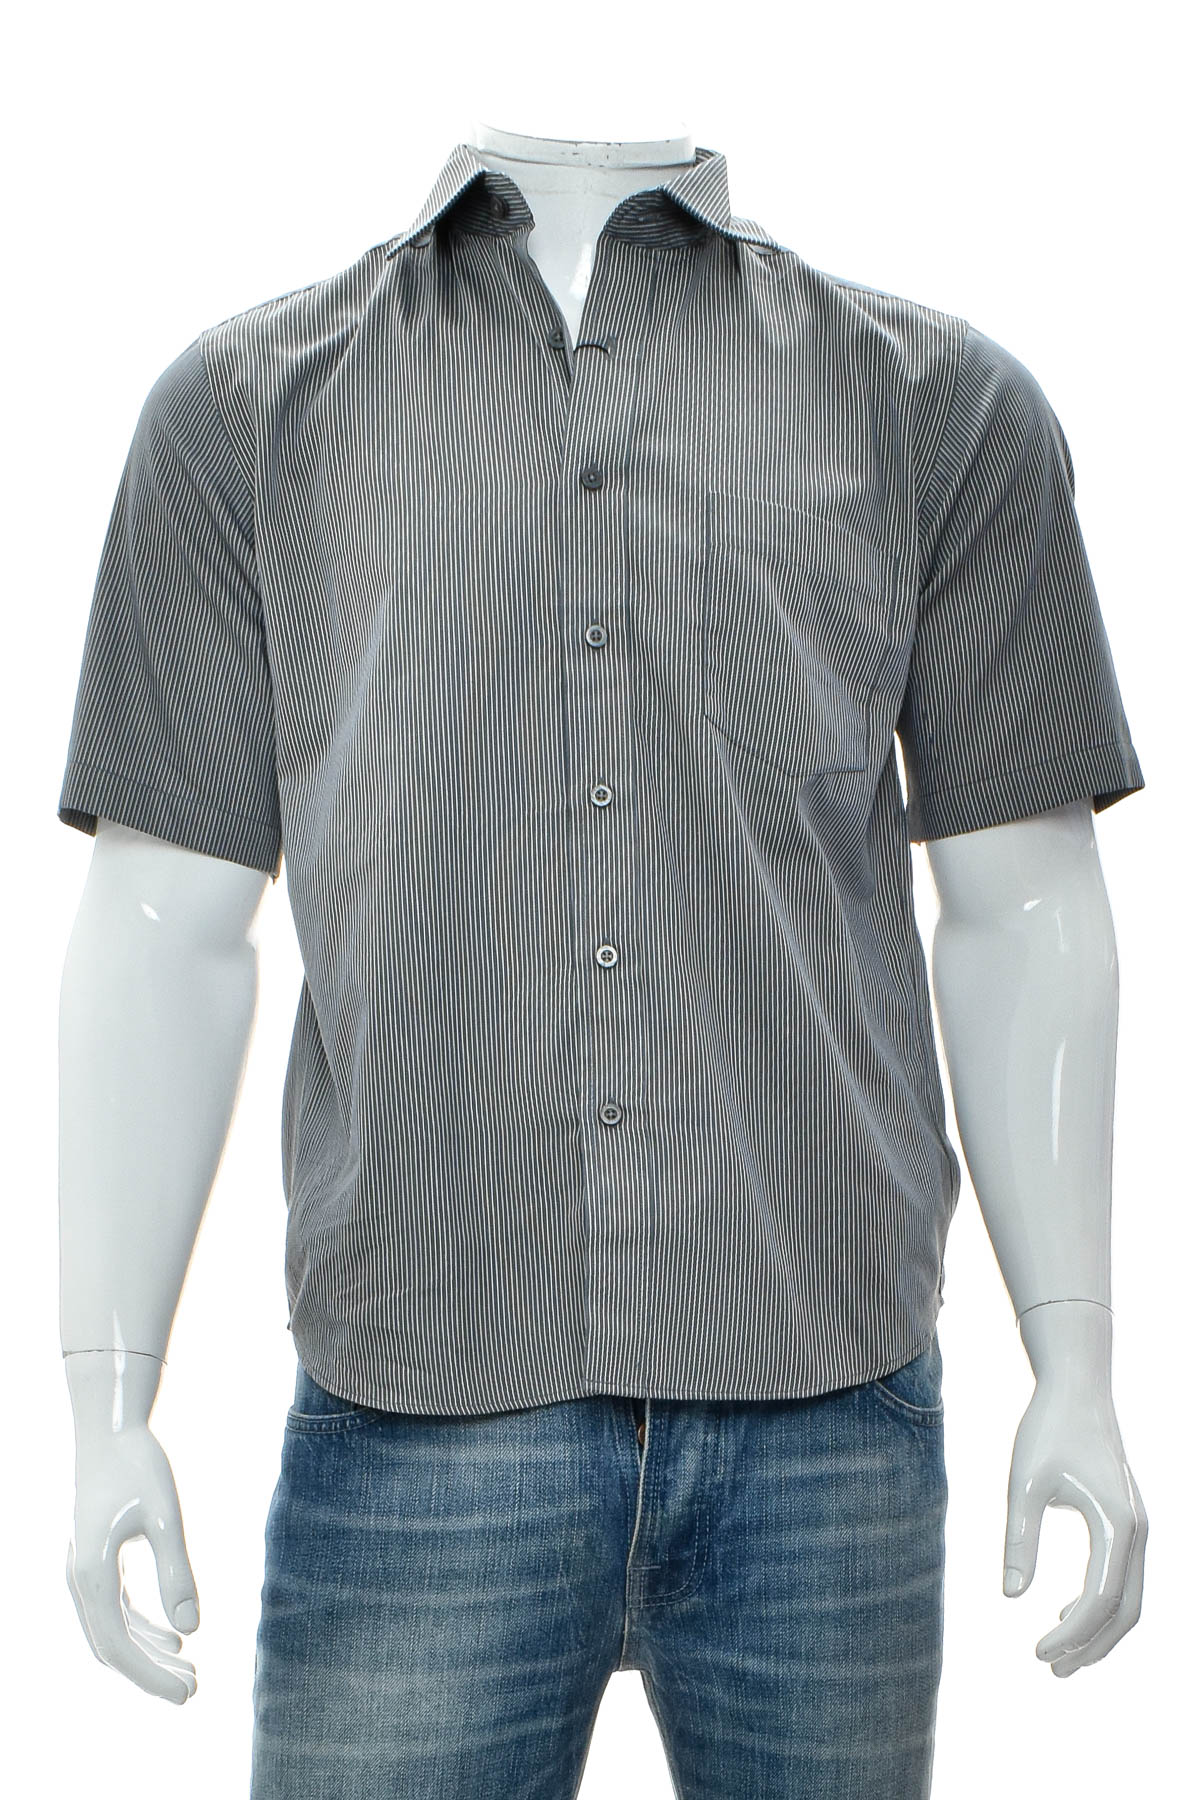 Men's shirt - JOHN KEVIN - 0